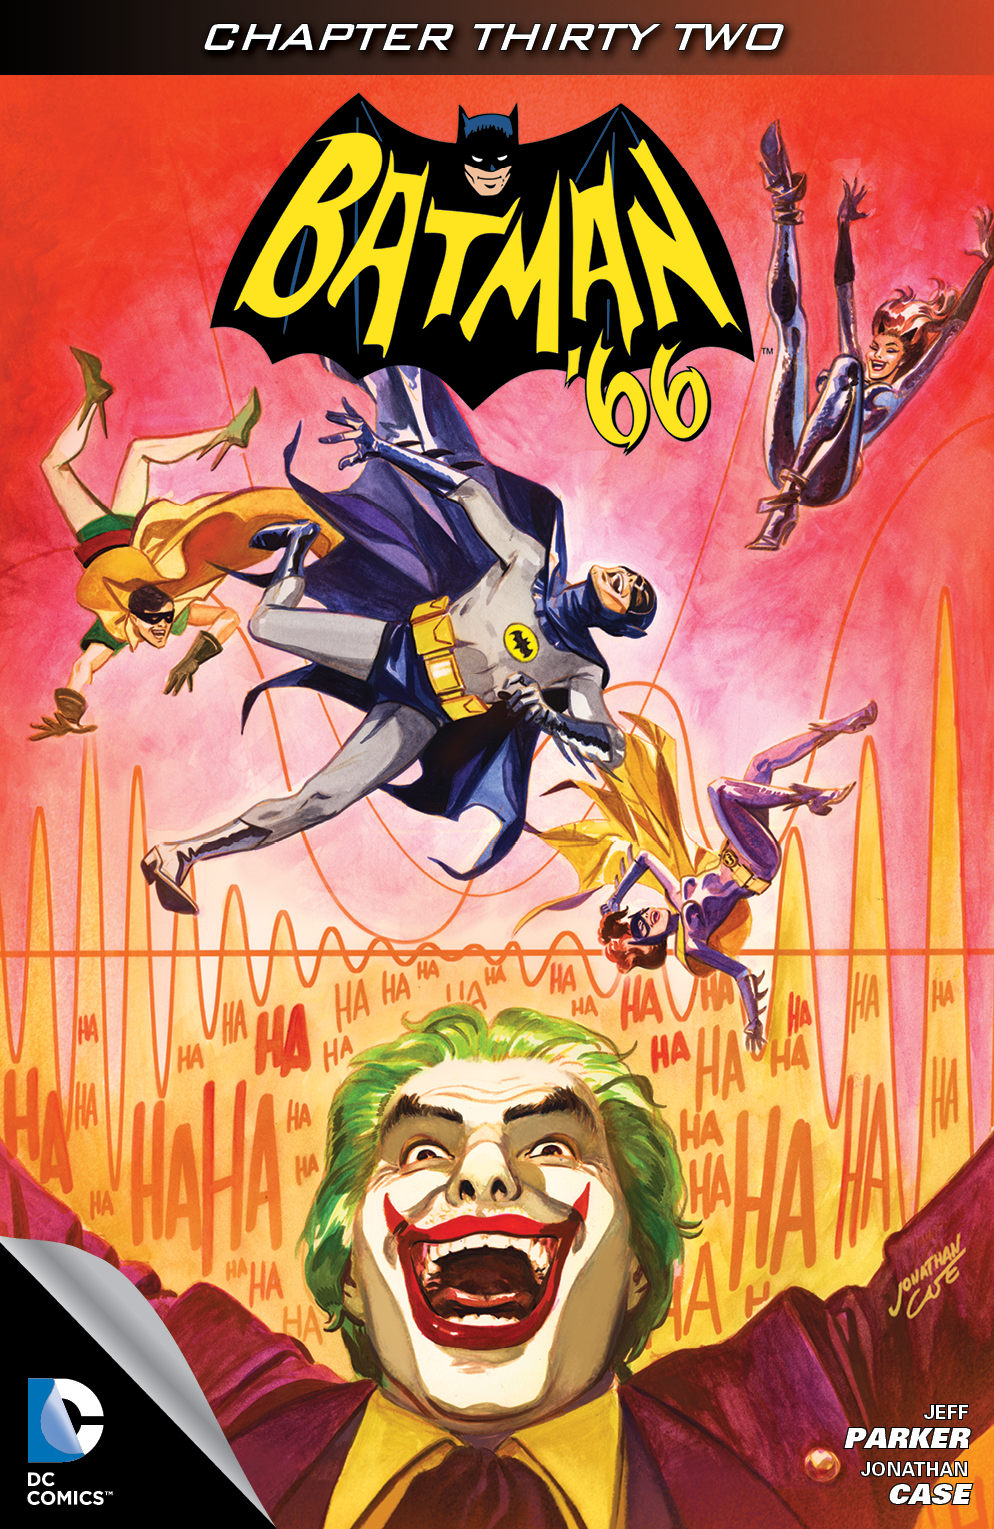 Batman '66 #32 preview images